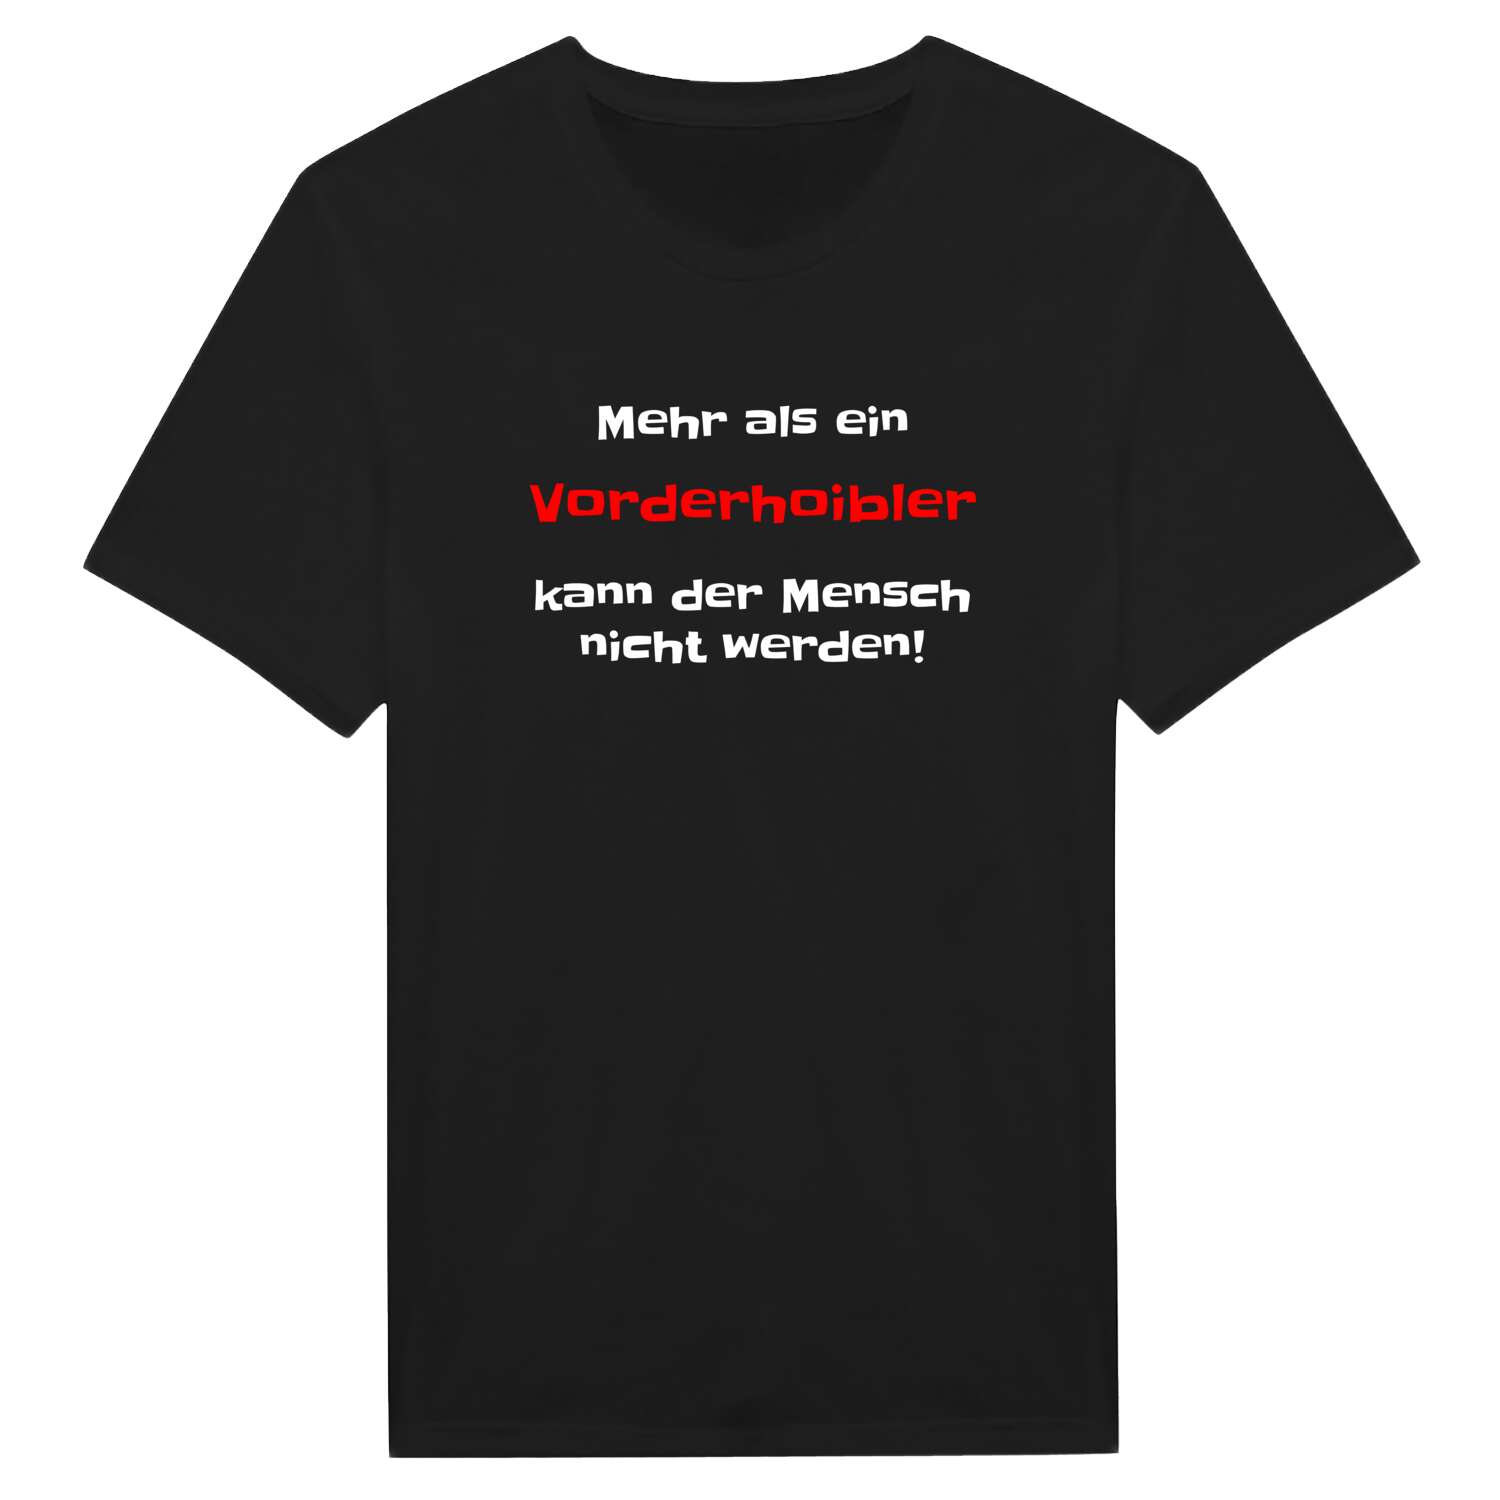 Vorderhoibl T-Shirt »Mehr als ein«